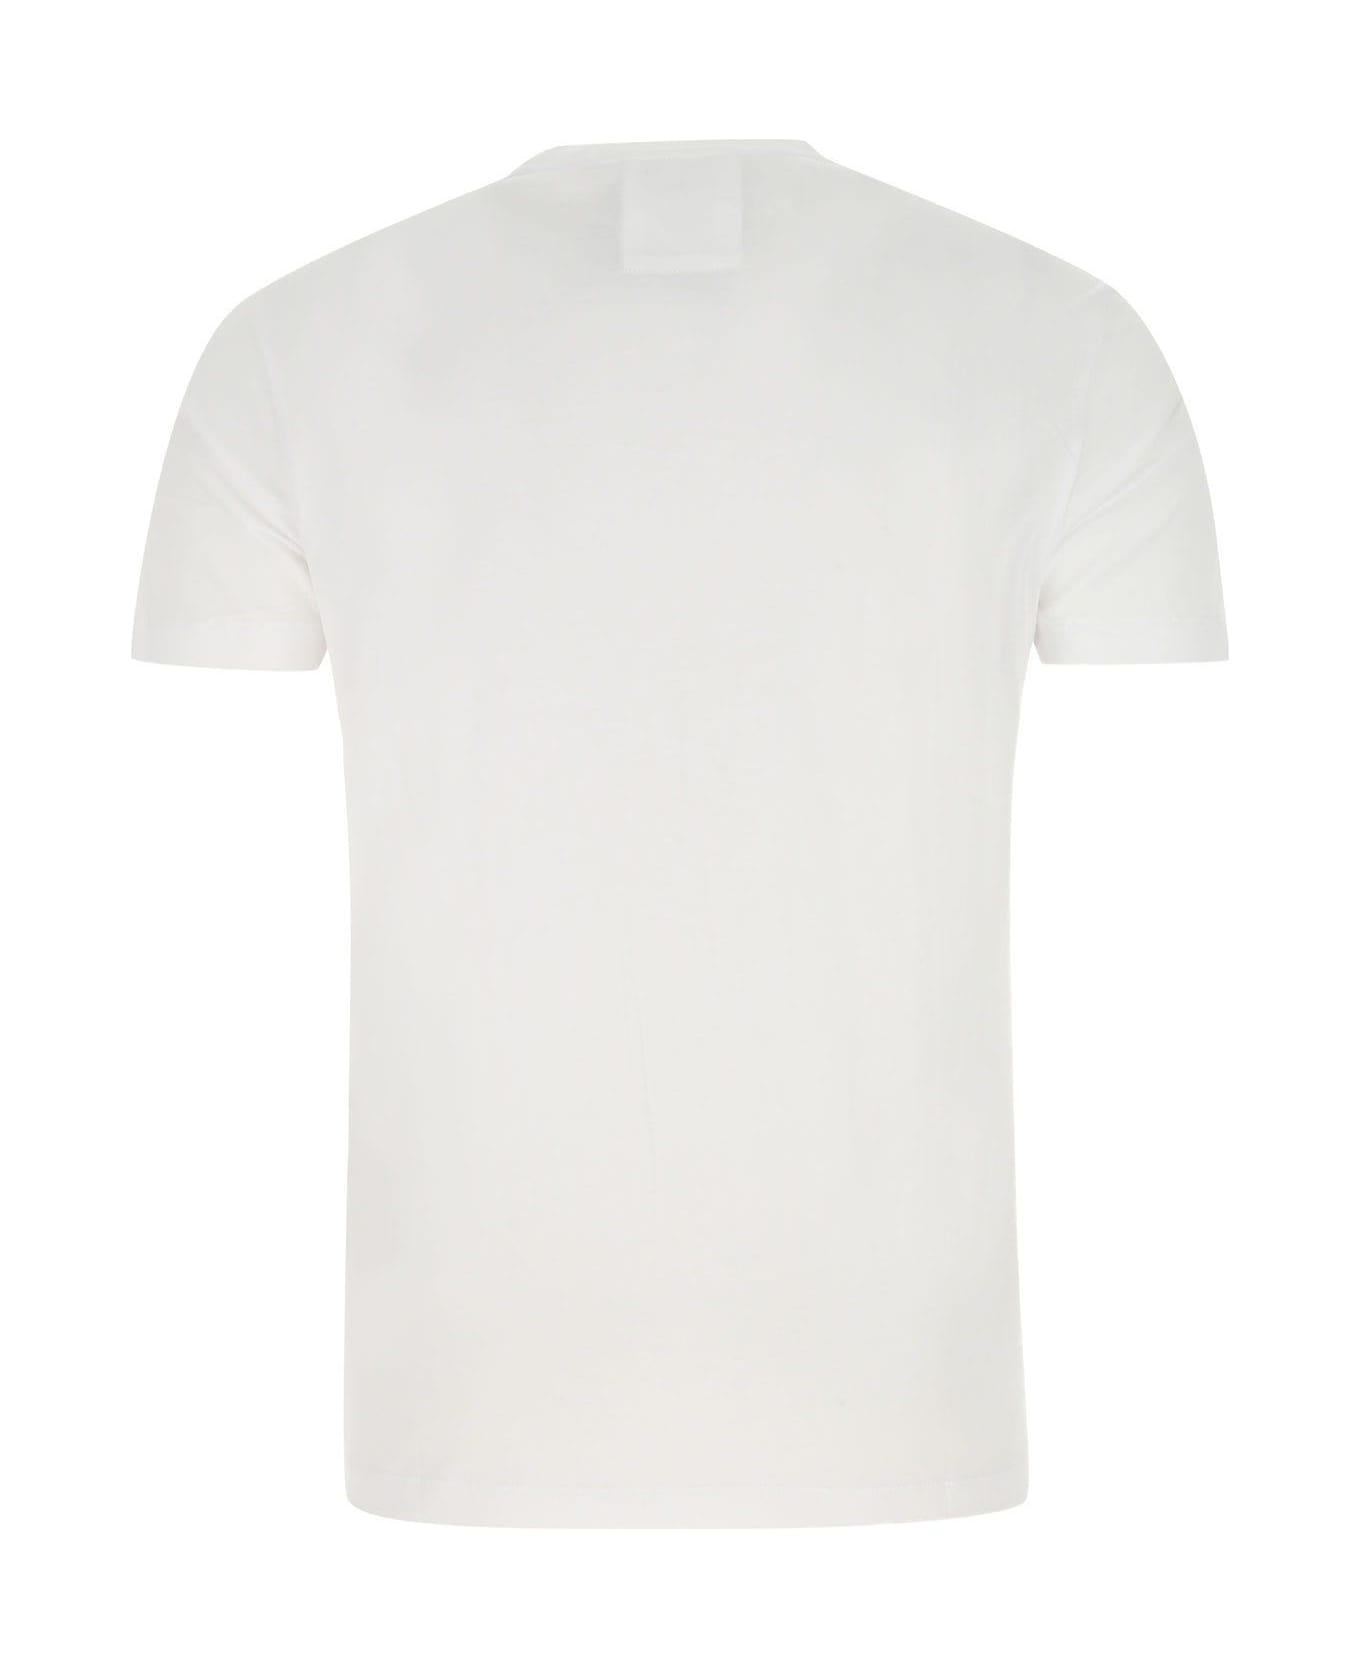 Emporio Armani White Cotton T-shirt - White シャツ